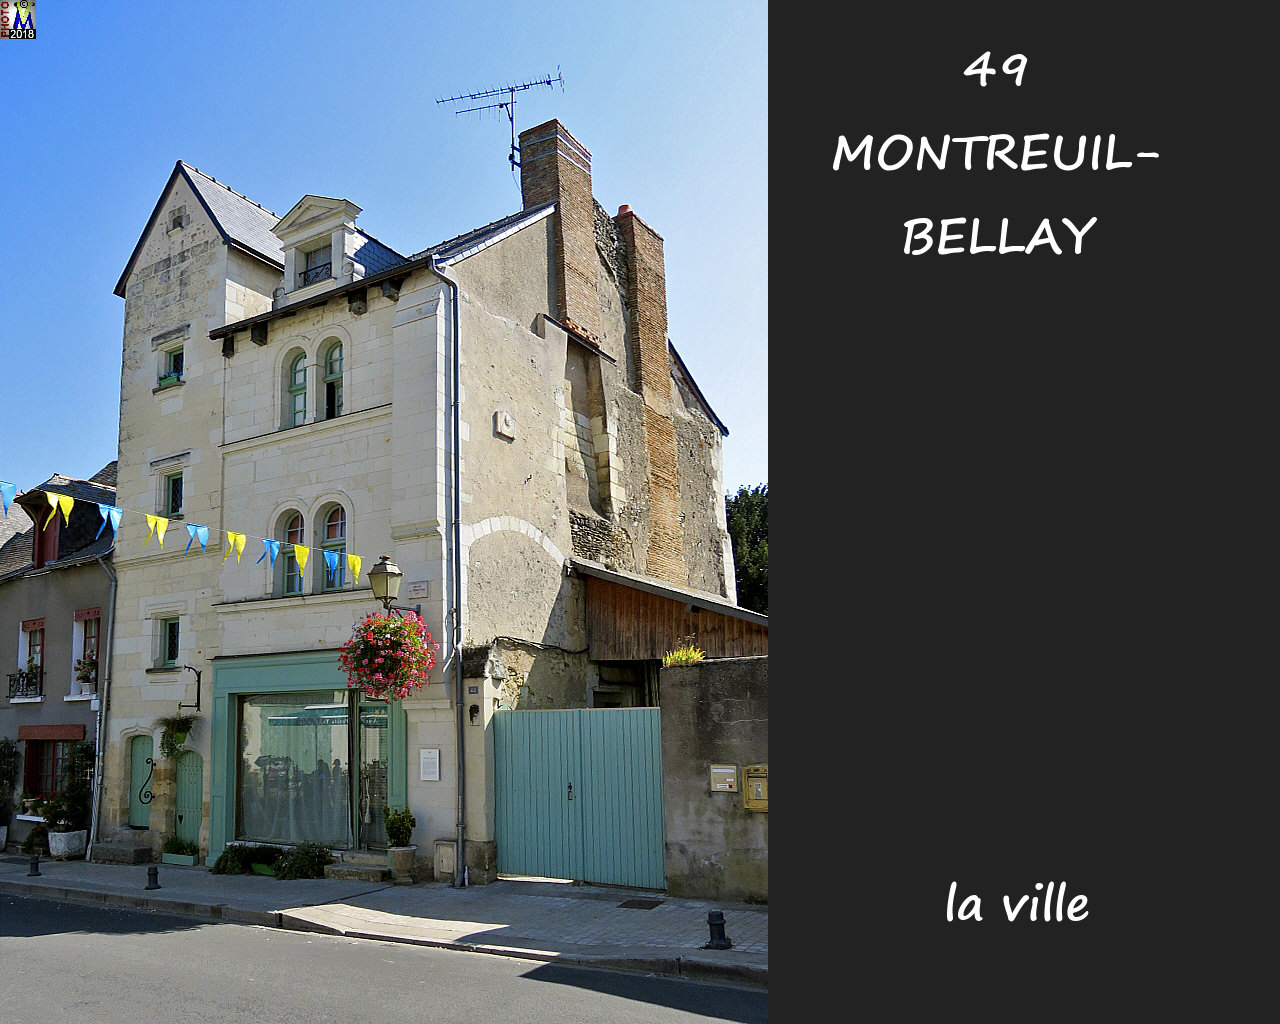 49MONTREUIL-BELLAY_ville_1038.jpg